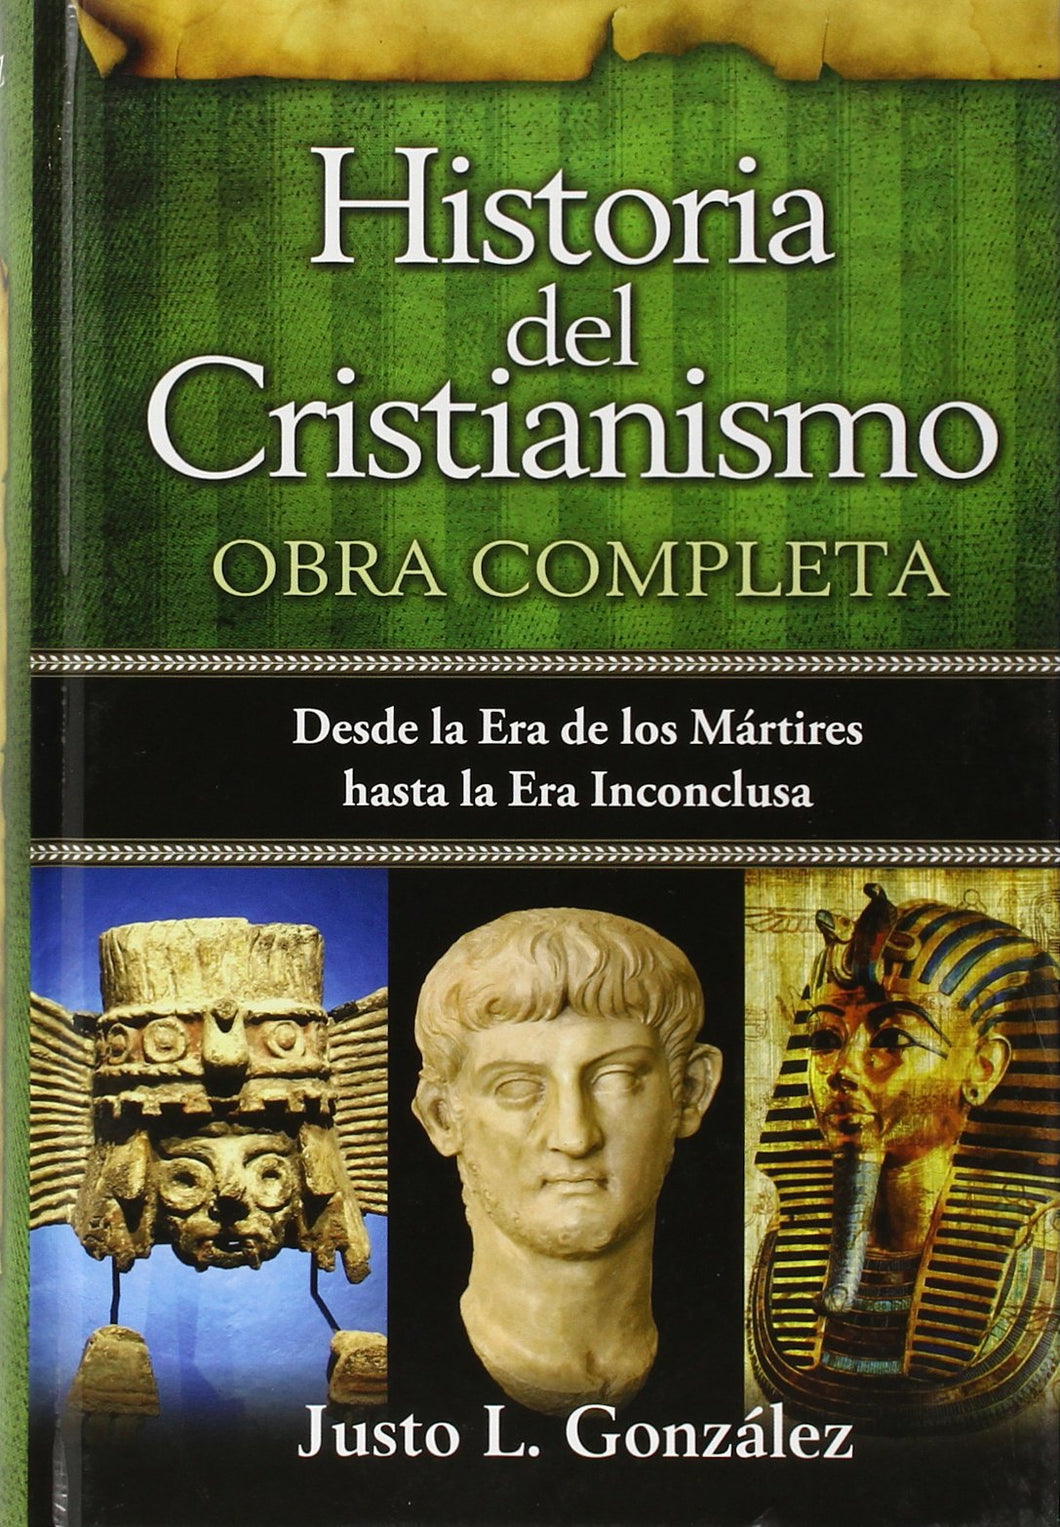 Historia del Cristianismo Obra Completa - Justo L Gonzalez